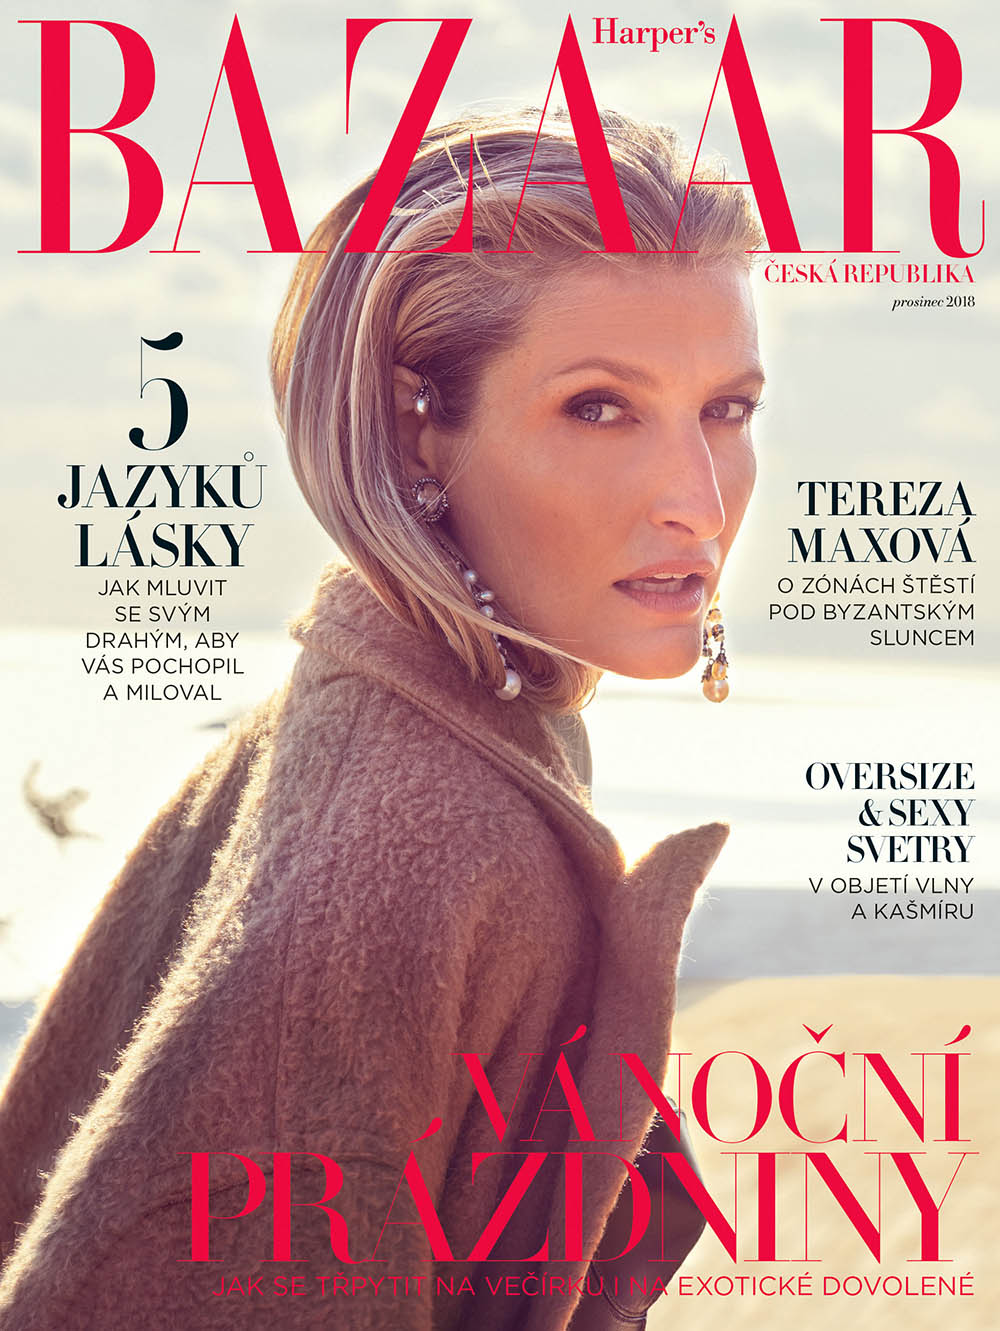 Tereza Maxova covers Harper’s Bazaar Czech December 2018 by Andreas Ortner